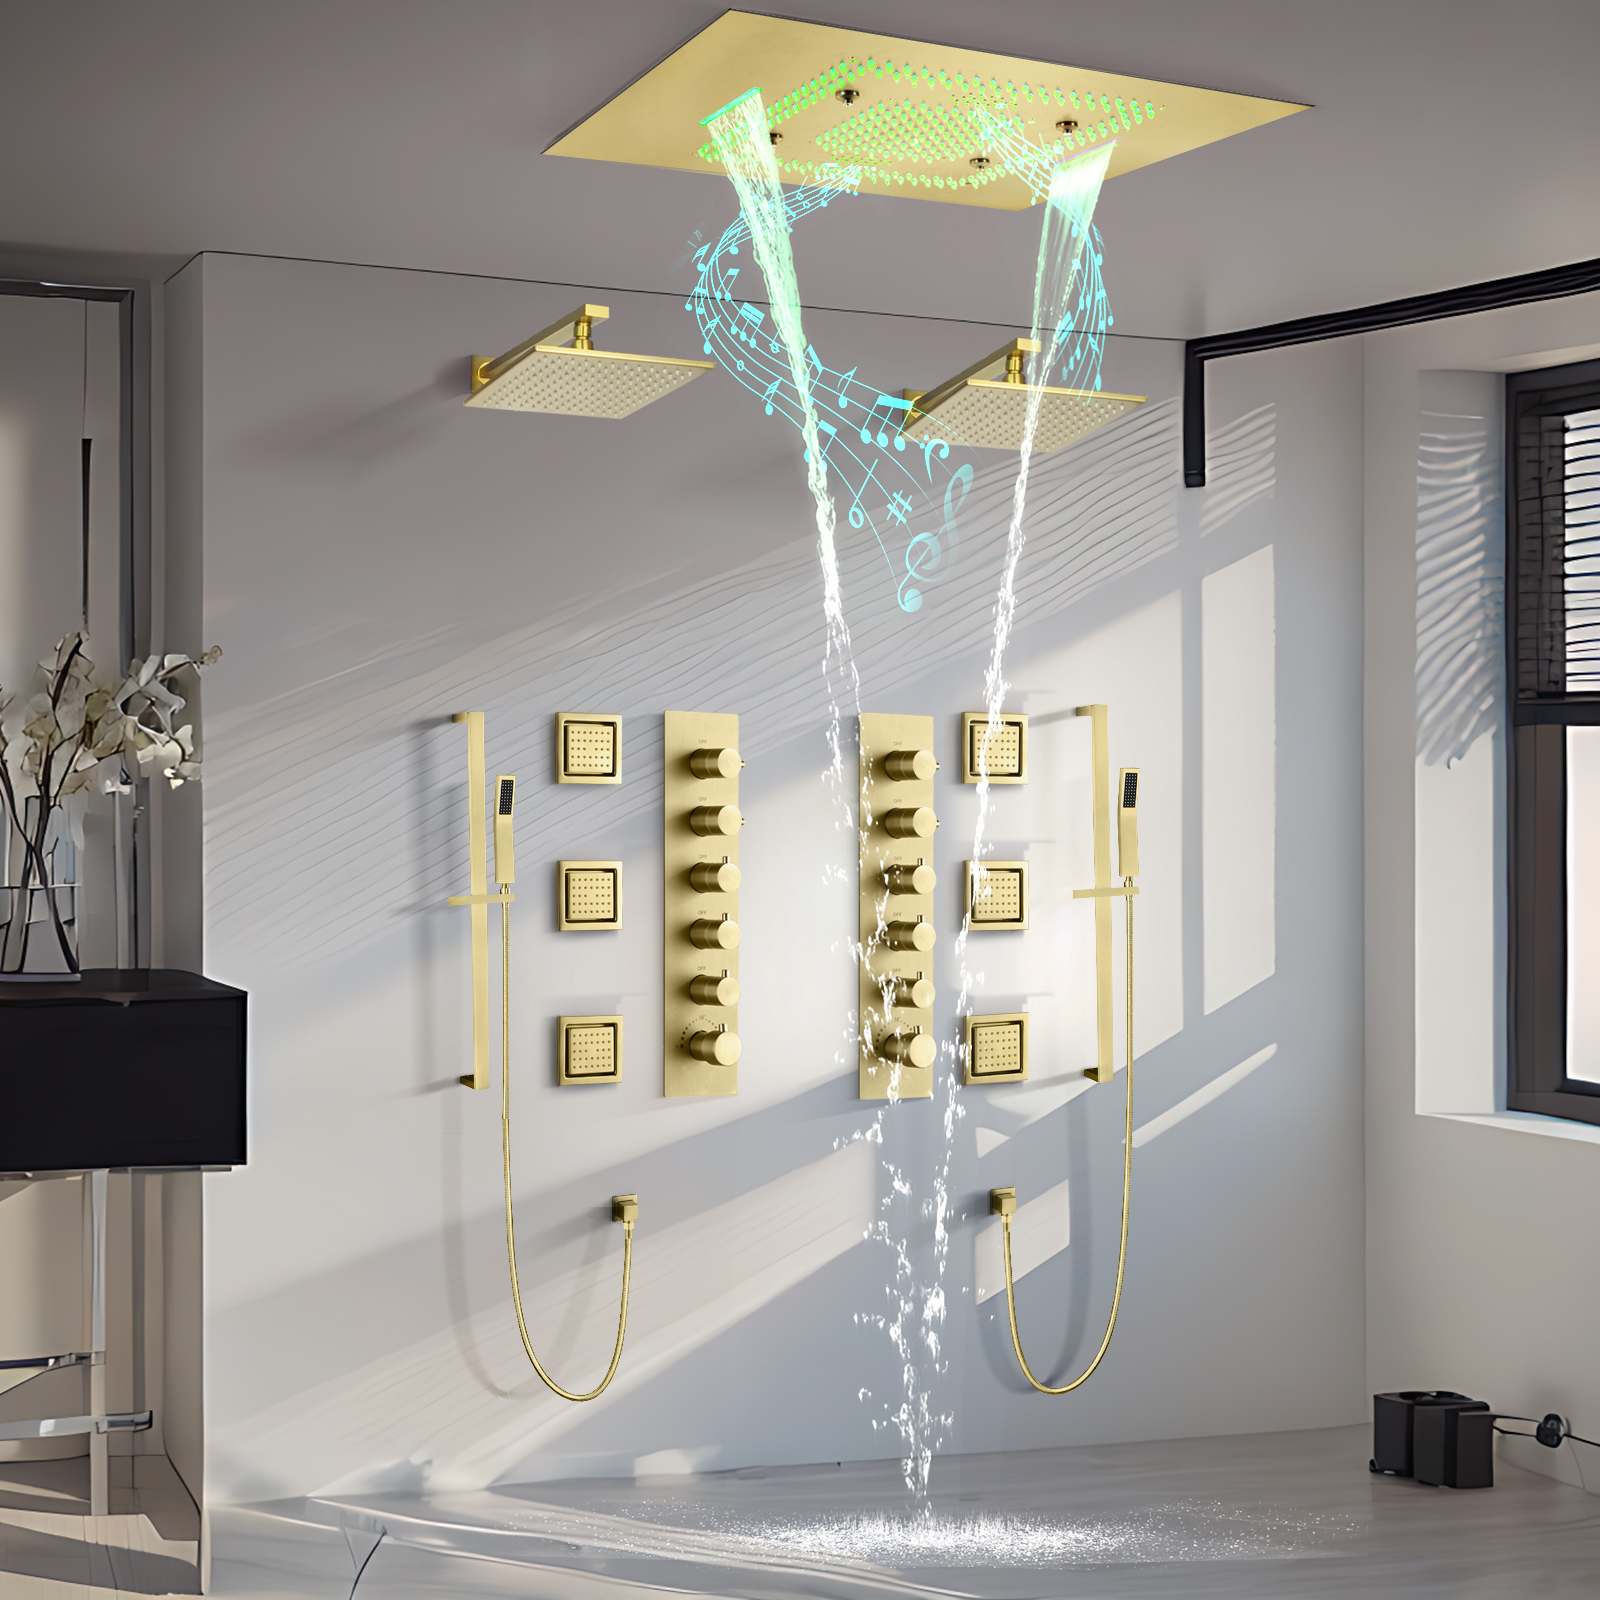 Transforme sua experiência de banho com chuveiros de LED